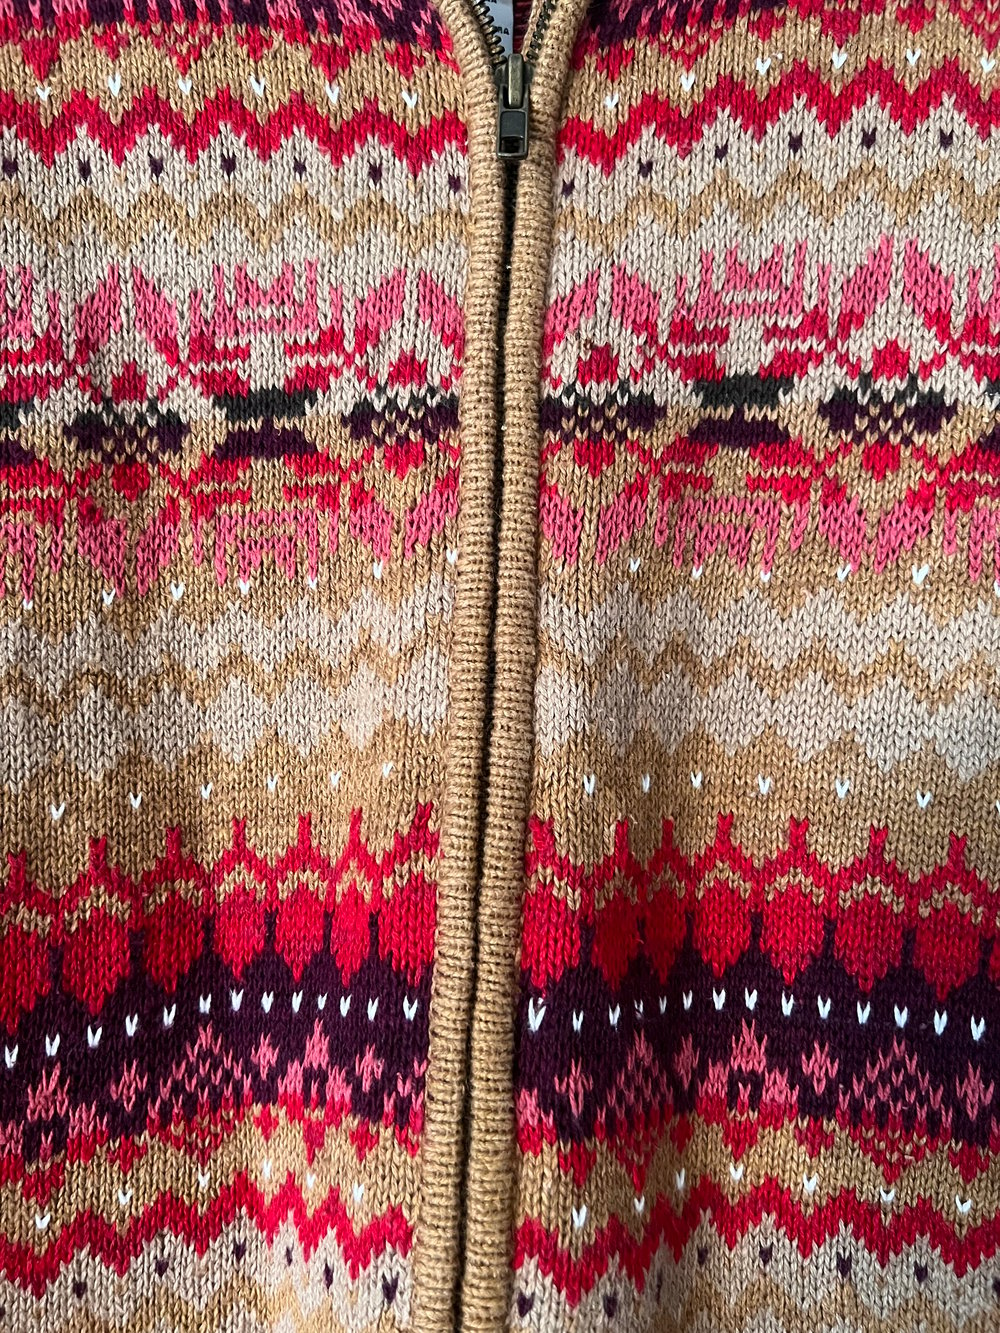 Vintage Tiara Zip Up Sweater (S)